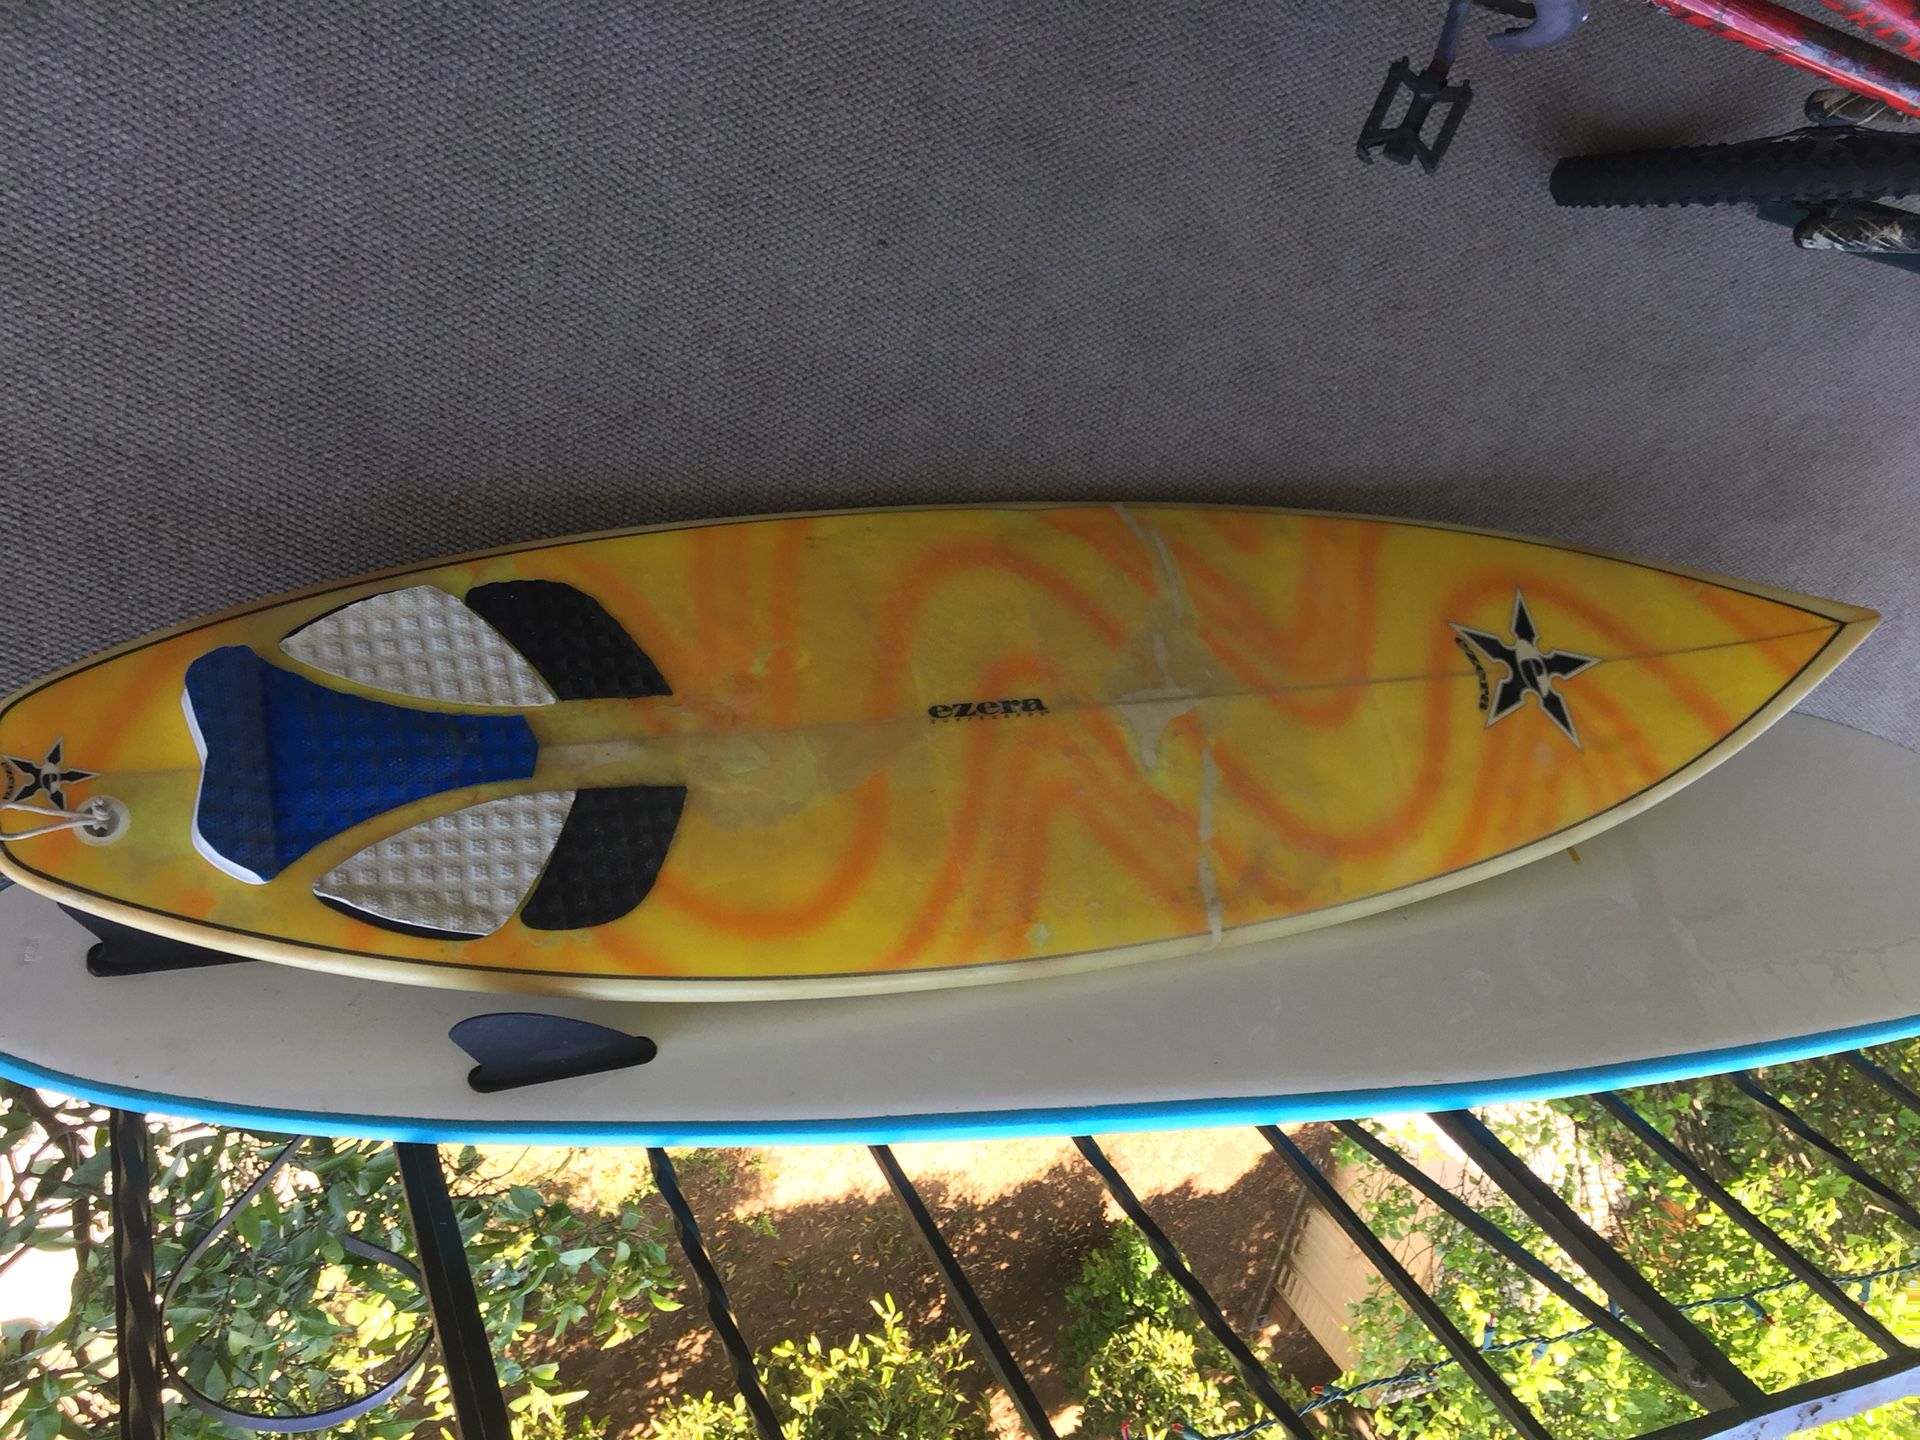 Ezera surfboard